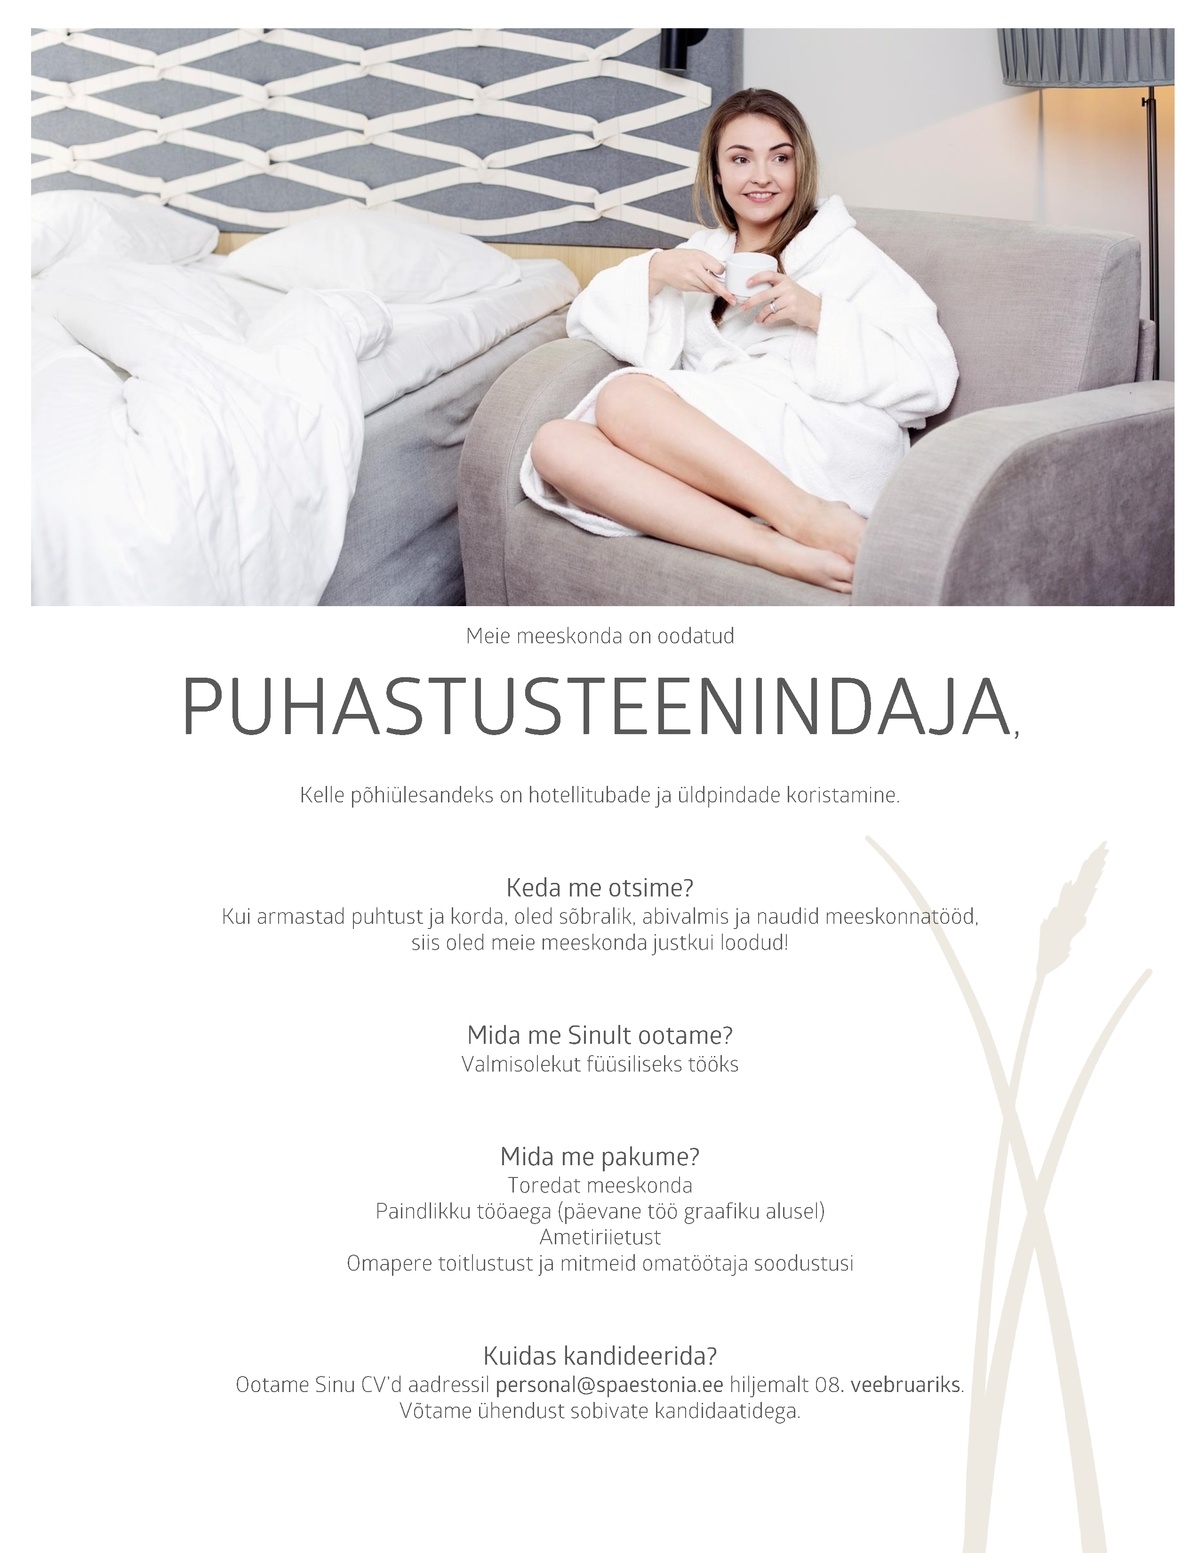 Estonia Spa Hotels AS Puhastusteenindaja